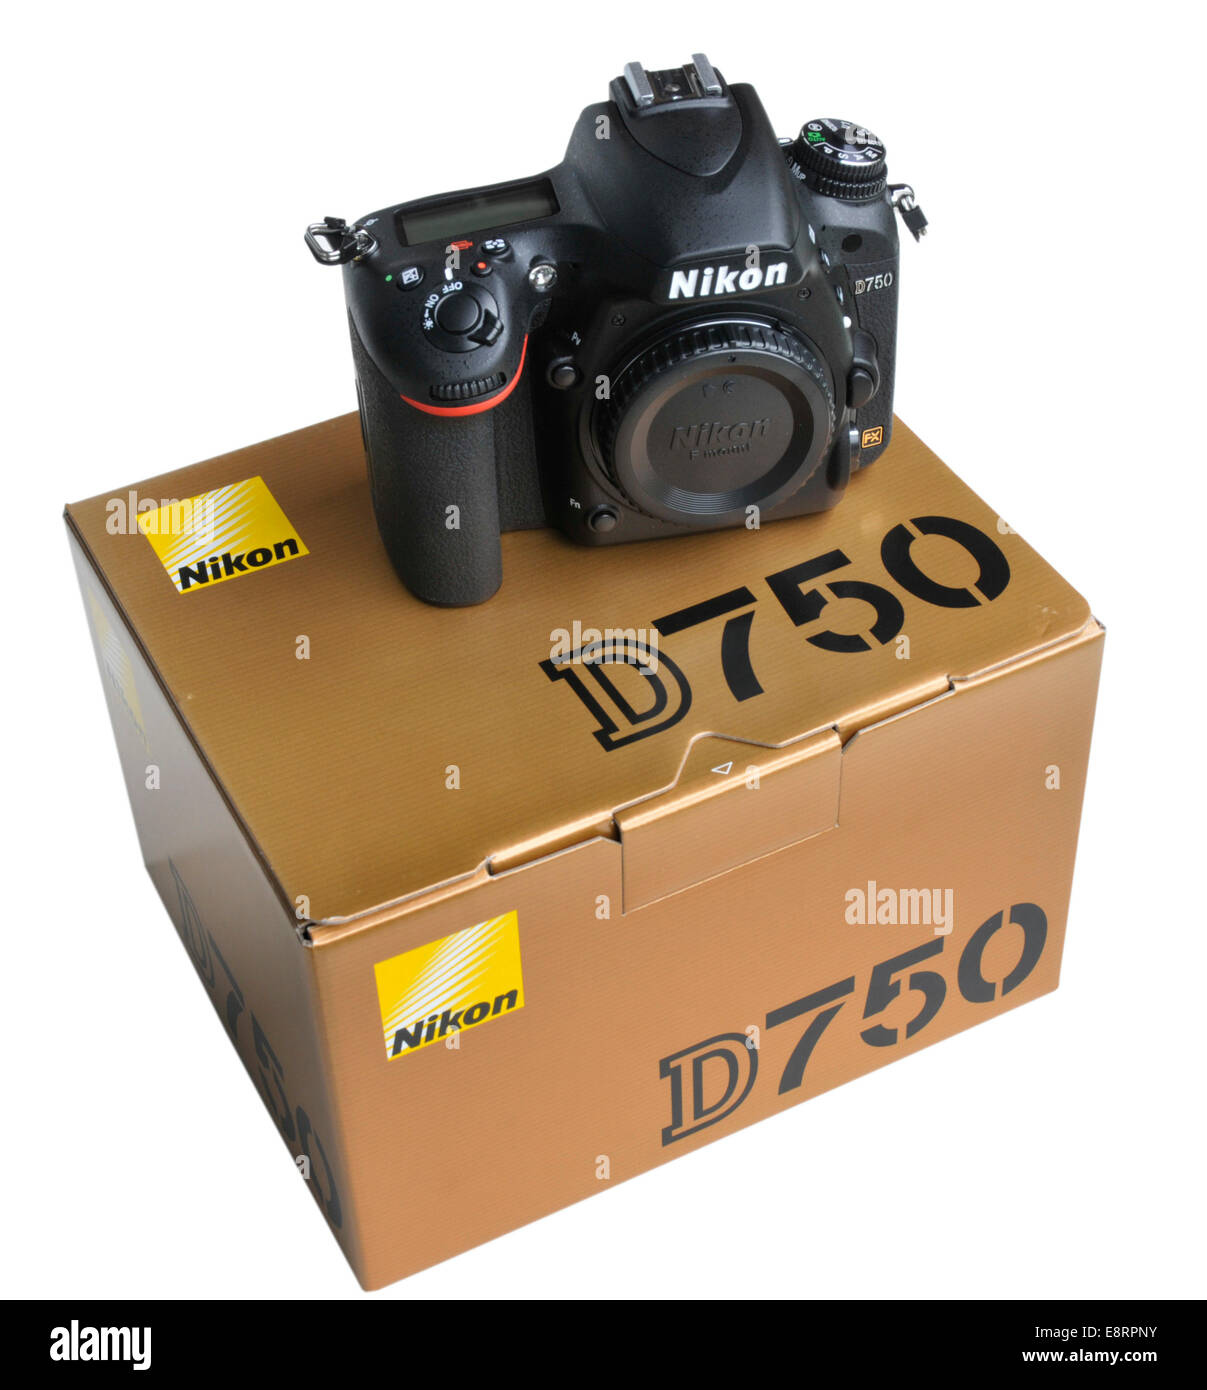 Nikon d750 immagini e fotografie stock ad alta risoluzione - Alamy